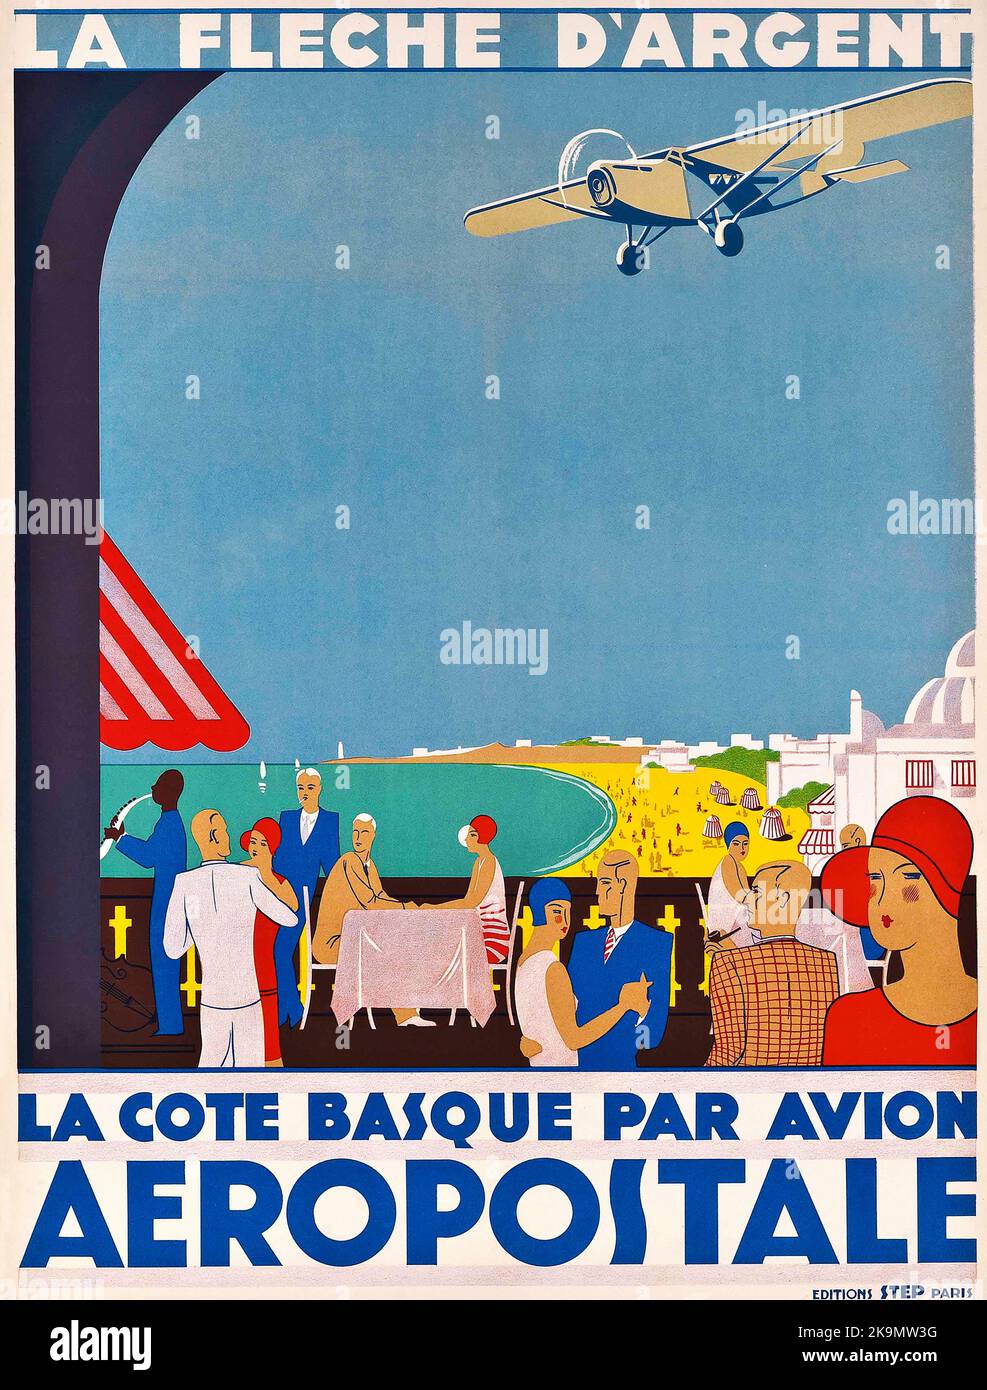 Vintage 1920s  Avation Poster - Aeropostale / La Fleche d'argent (  the Basque coast by plane) Stock Photo